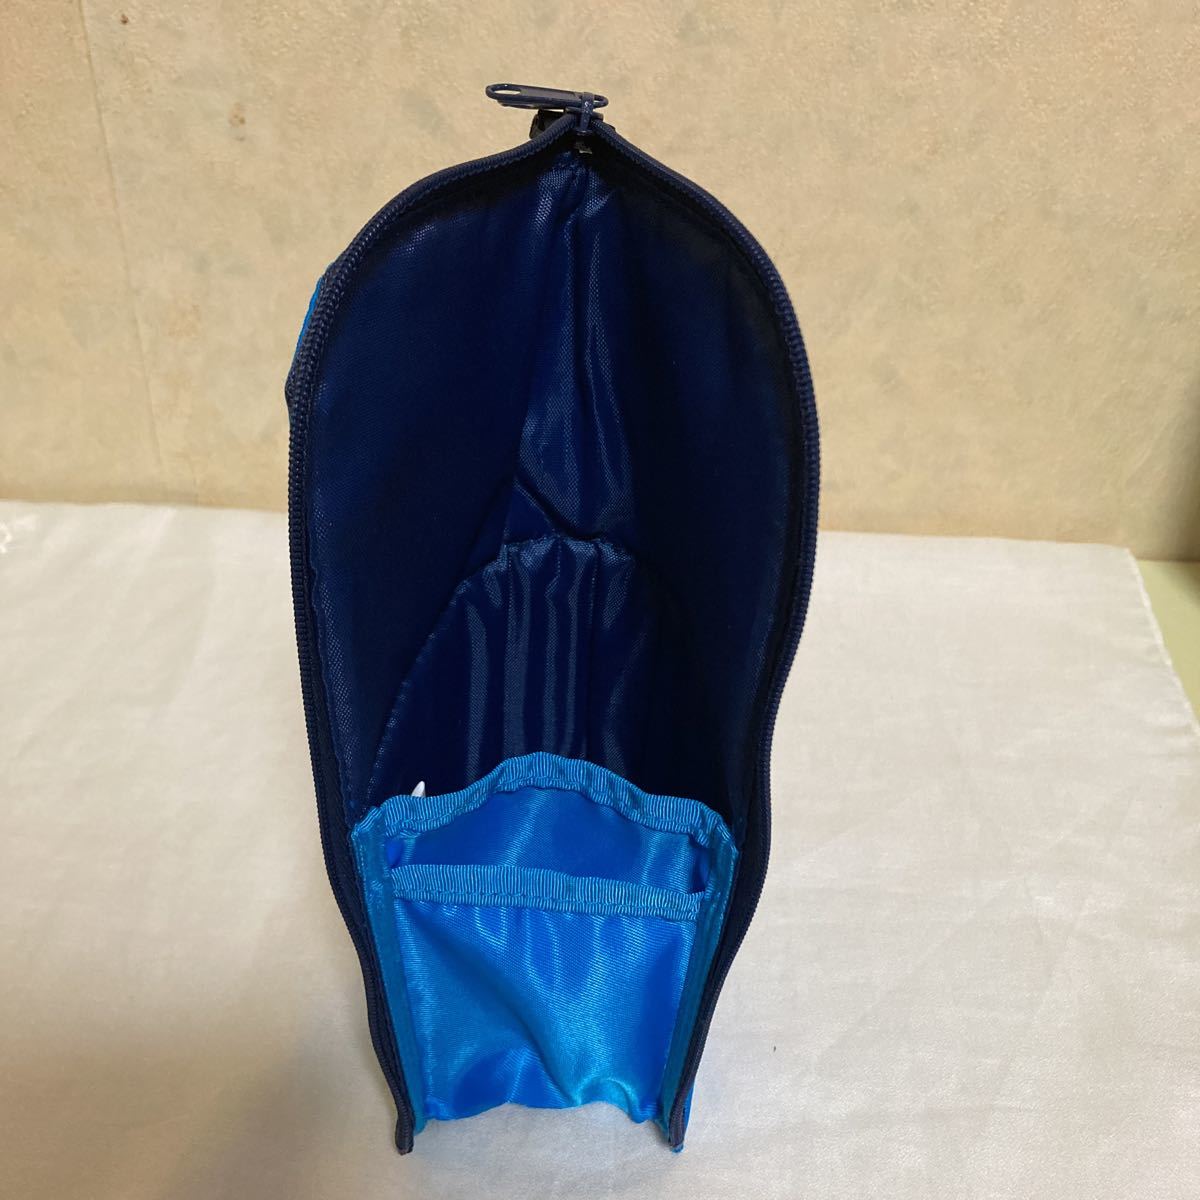 KOKUYO コクヨ 筆箱 立つペンケース ペンケース 立つ 青 ブルー ナイロン ネオクリッツ NEO CRITZ ペンスタンド ペン立て コクヨペンケース_画像5